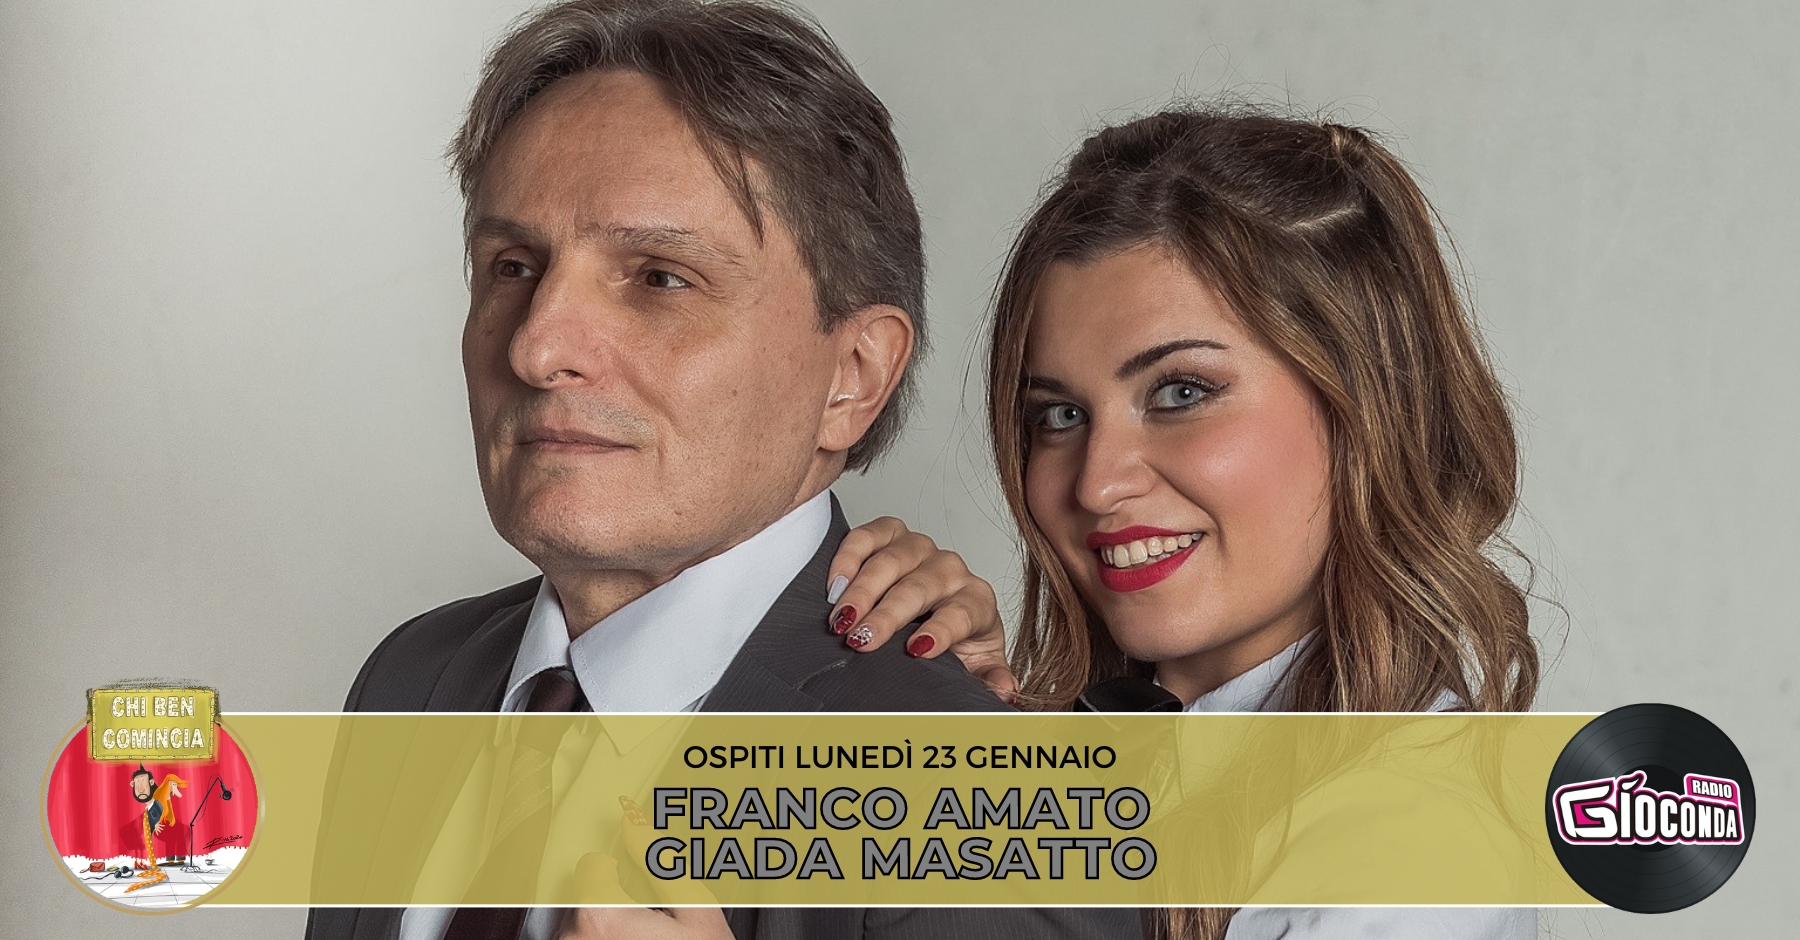 🔛 Gli attori Giada Masatto e Franco Amato sono gli ospiti della nuova puntata di "Chi ben comincia" in onda lunedì 23 gennaio alle 18.00.